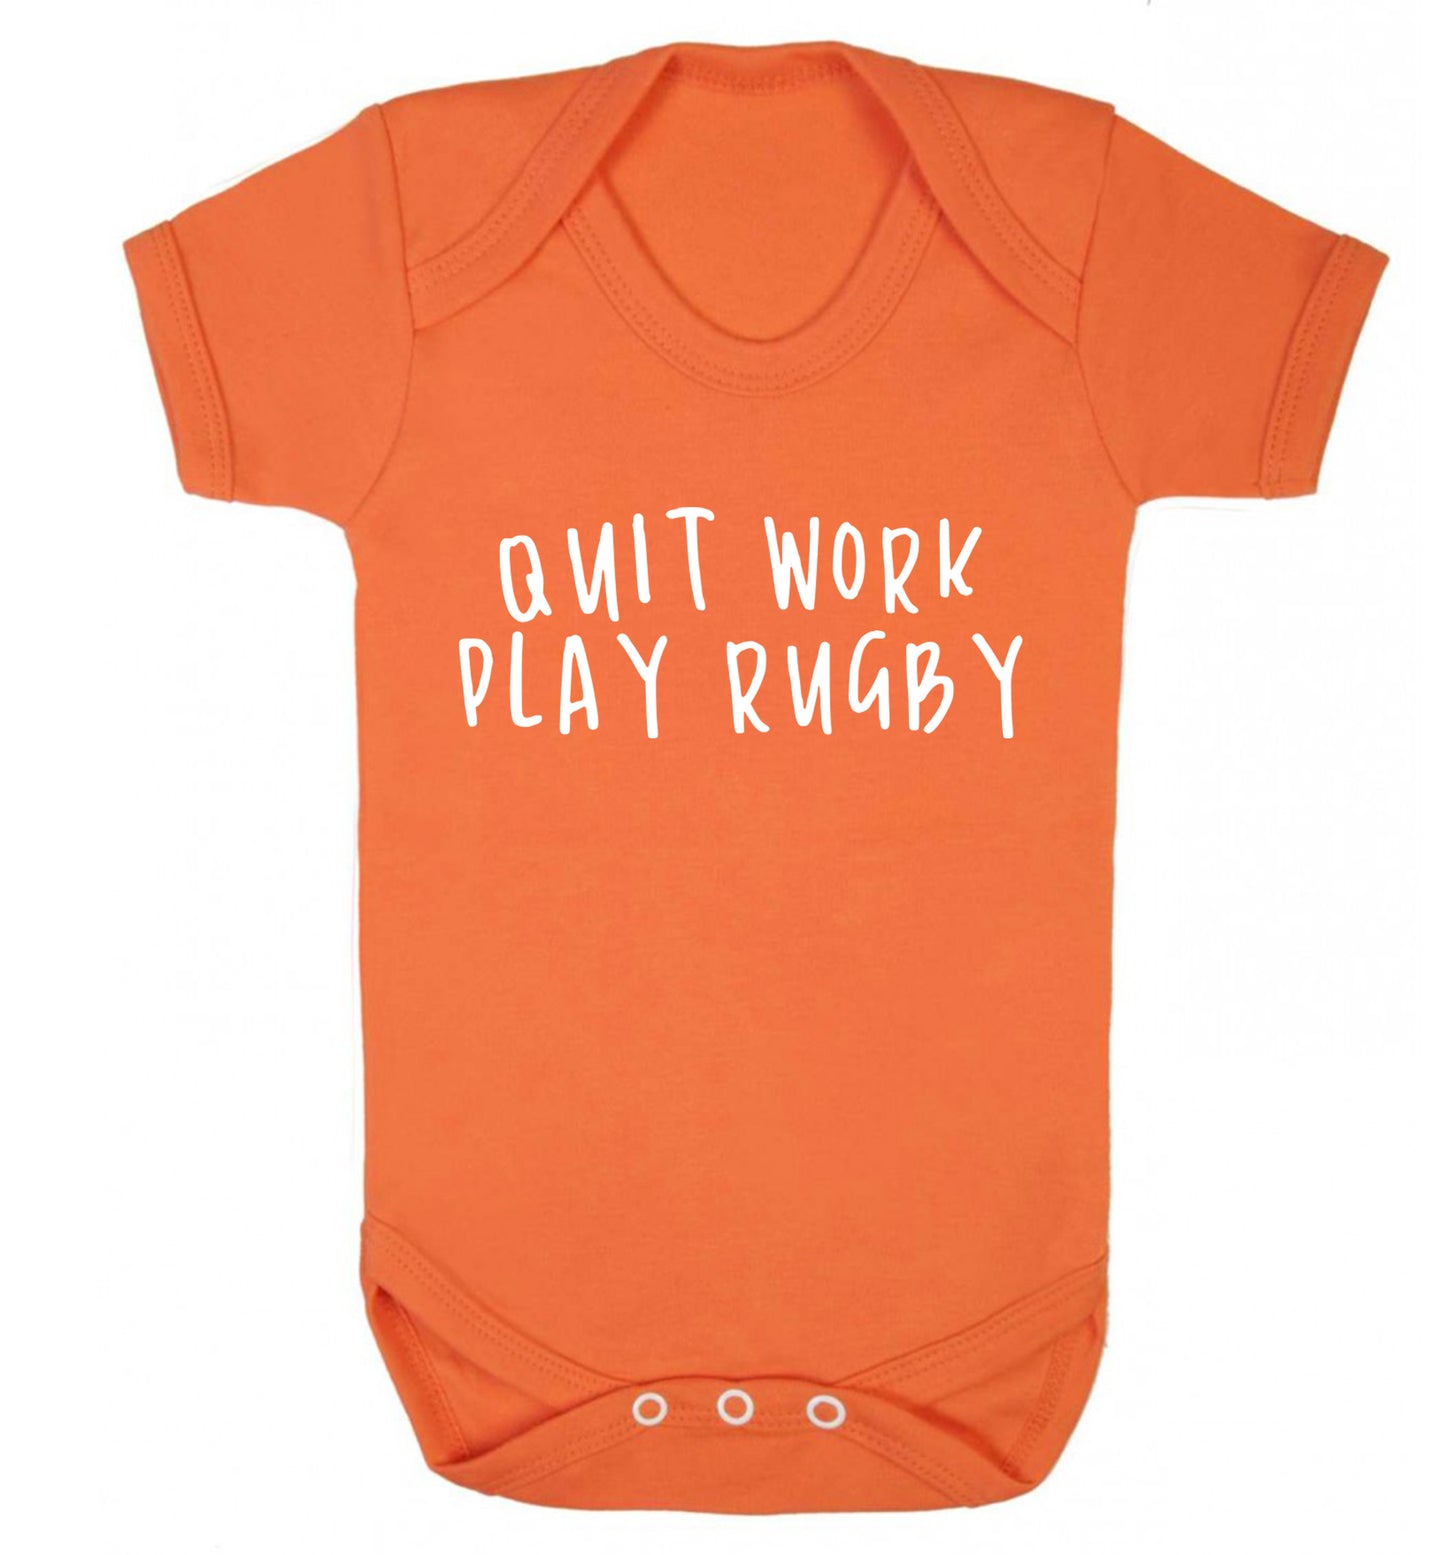 Quit work play rugby Baby Vest orange 18-24 months